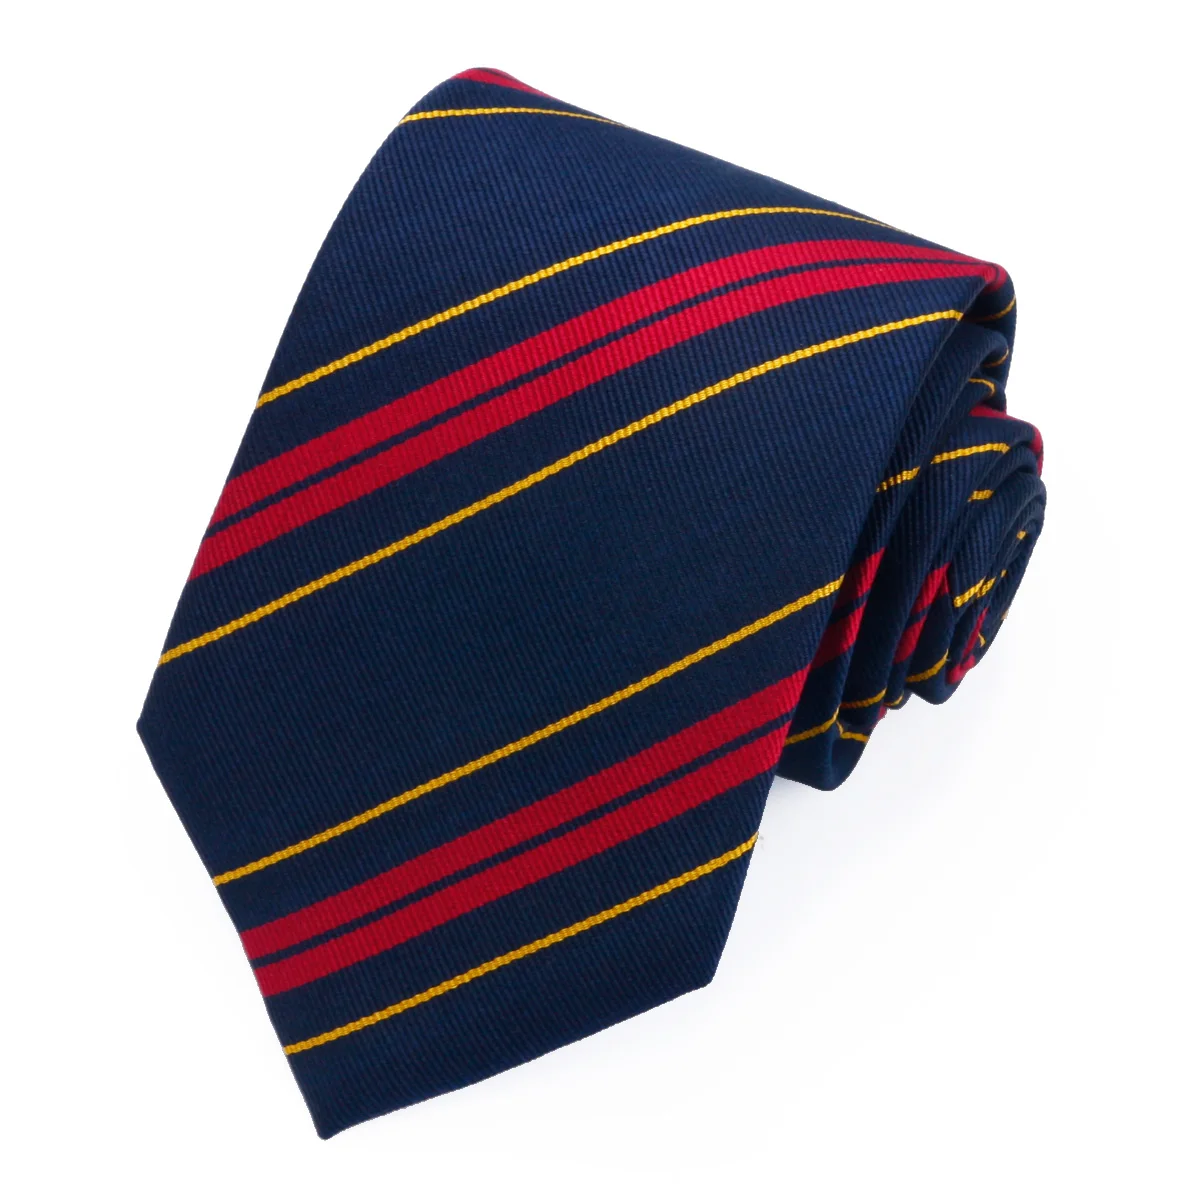 Мужские галстуки Hamocigia, жаккардовые тканые галстуки в полоску бордового цвета из 100% шелка, новейший дизайн